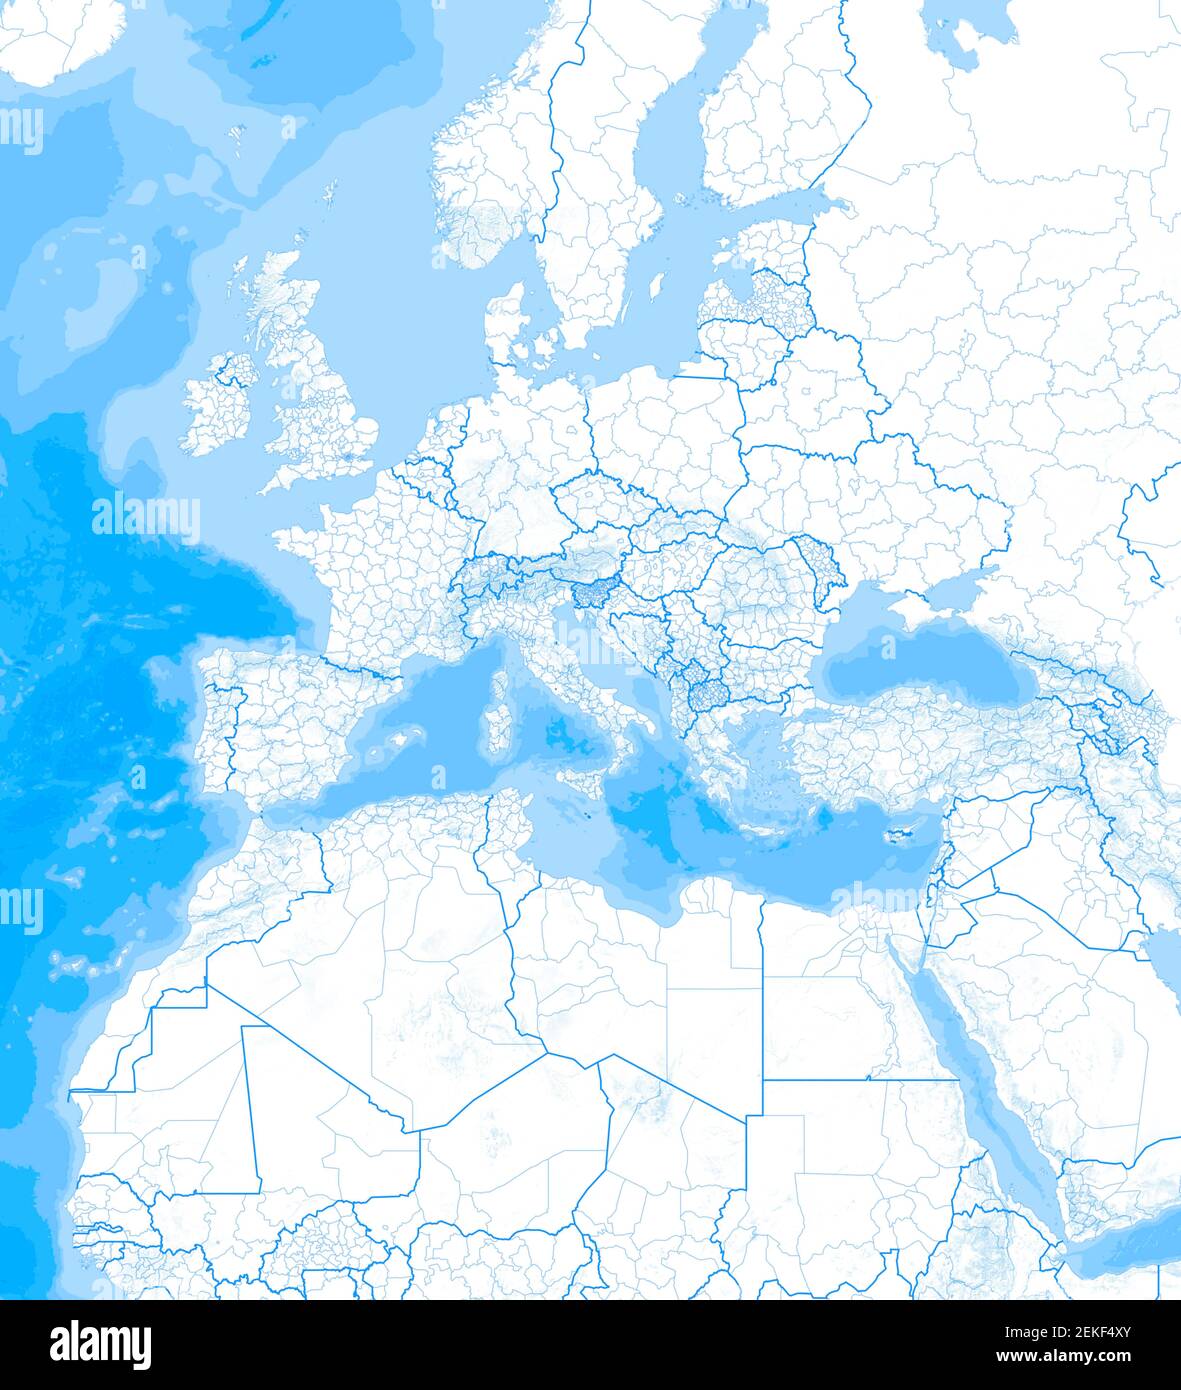 Carte de la mer Méditerranée et de l'Europe, de l'Afrique et du Moyen-Orient. Cartographie, atlas géographique. rendu 3d. Frontières et relief de montagne Banque D'Images